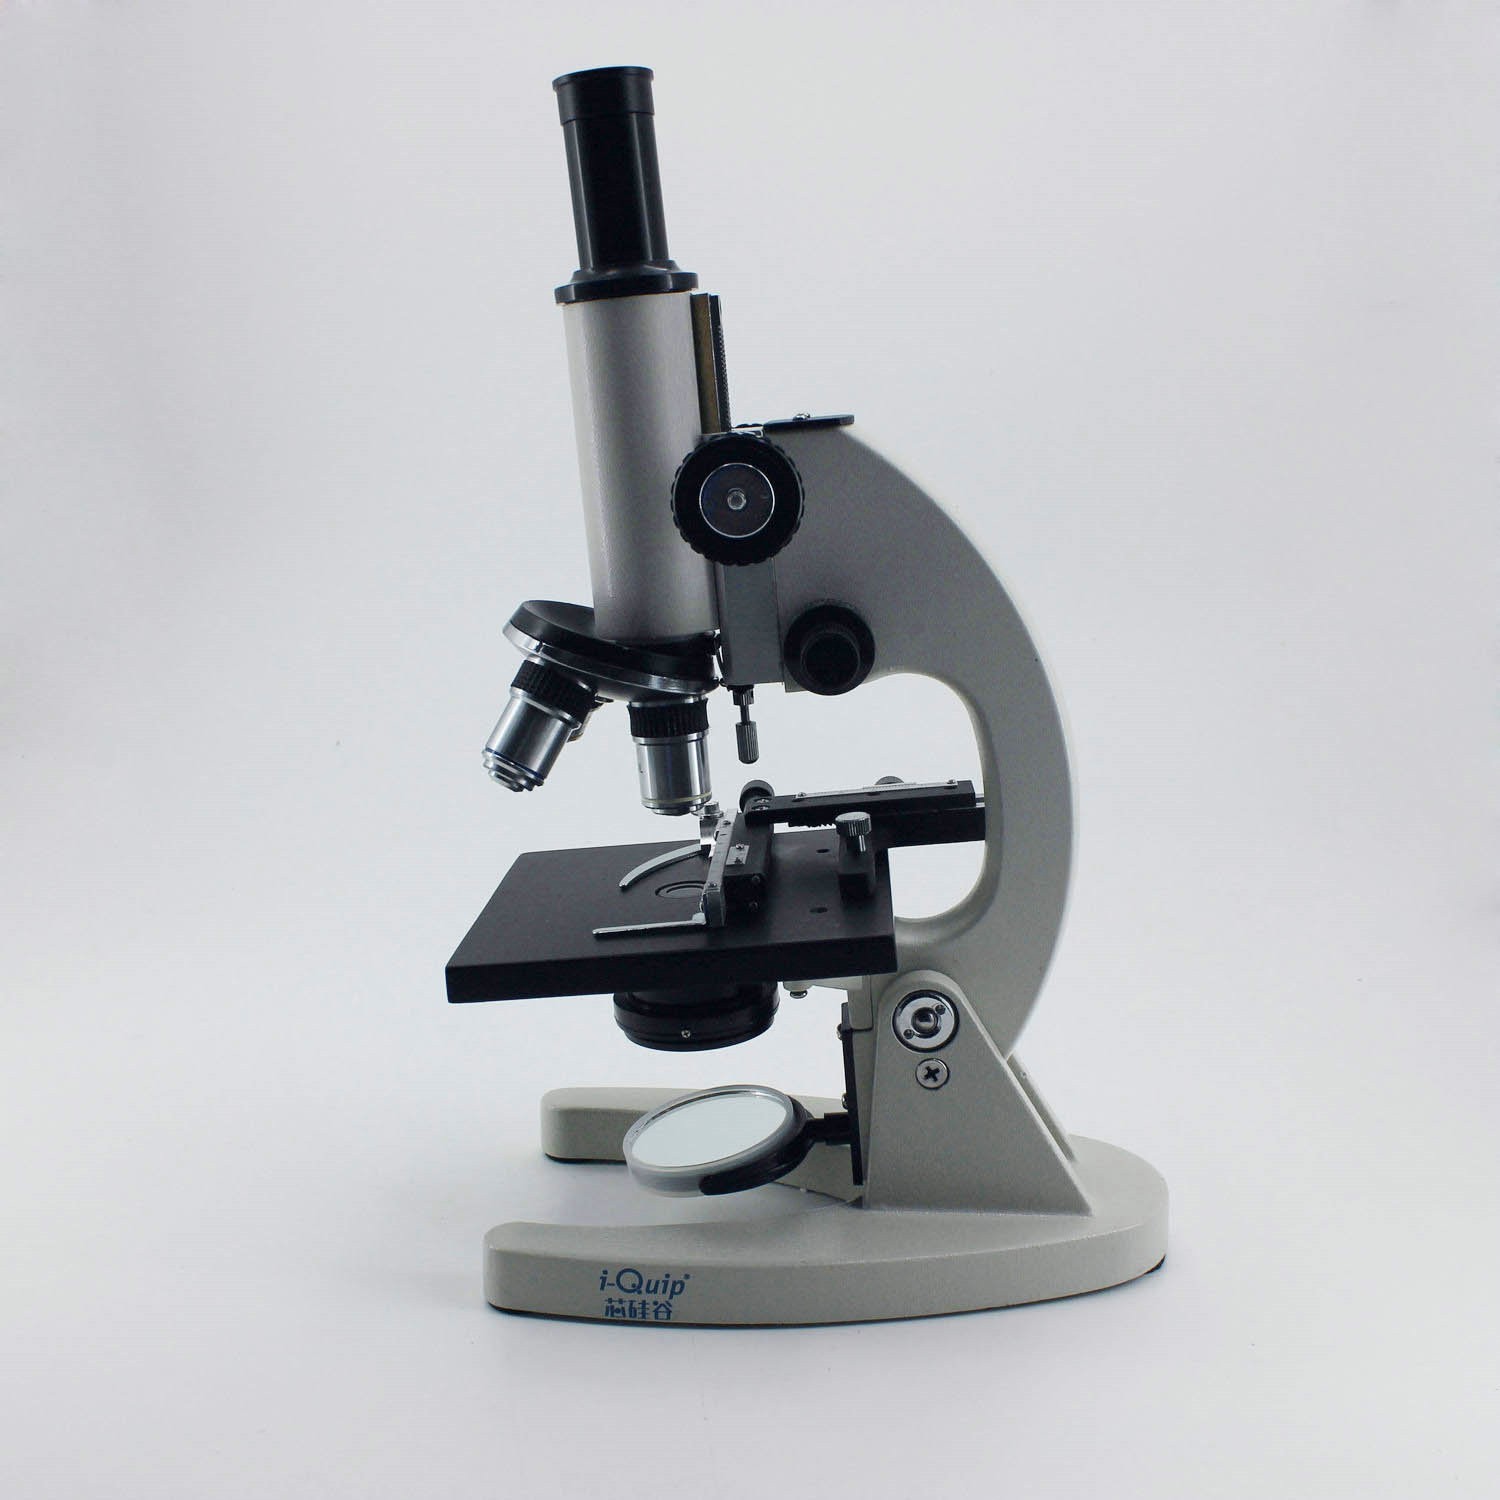 芯硅谷（i-quip)B1921 教学用单目生物显微镜